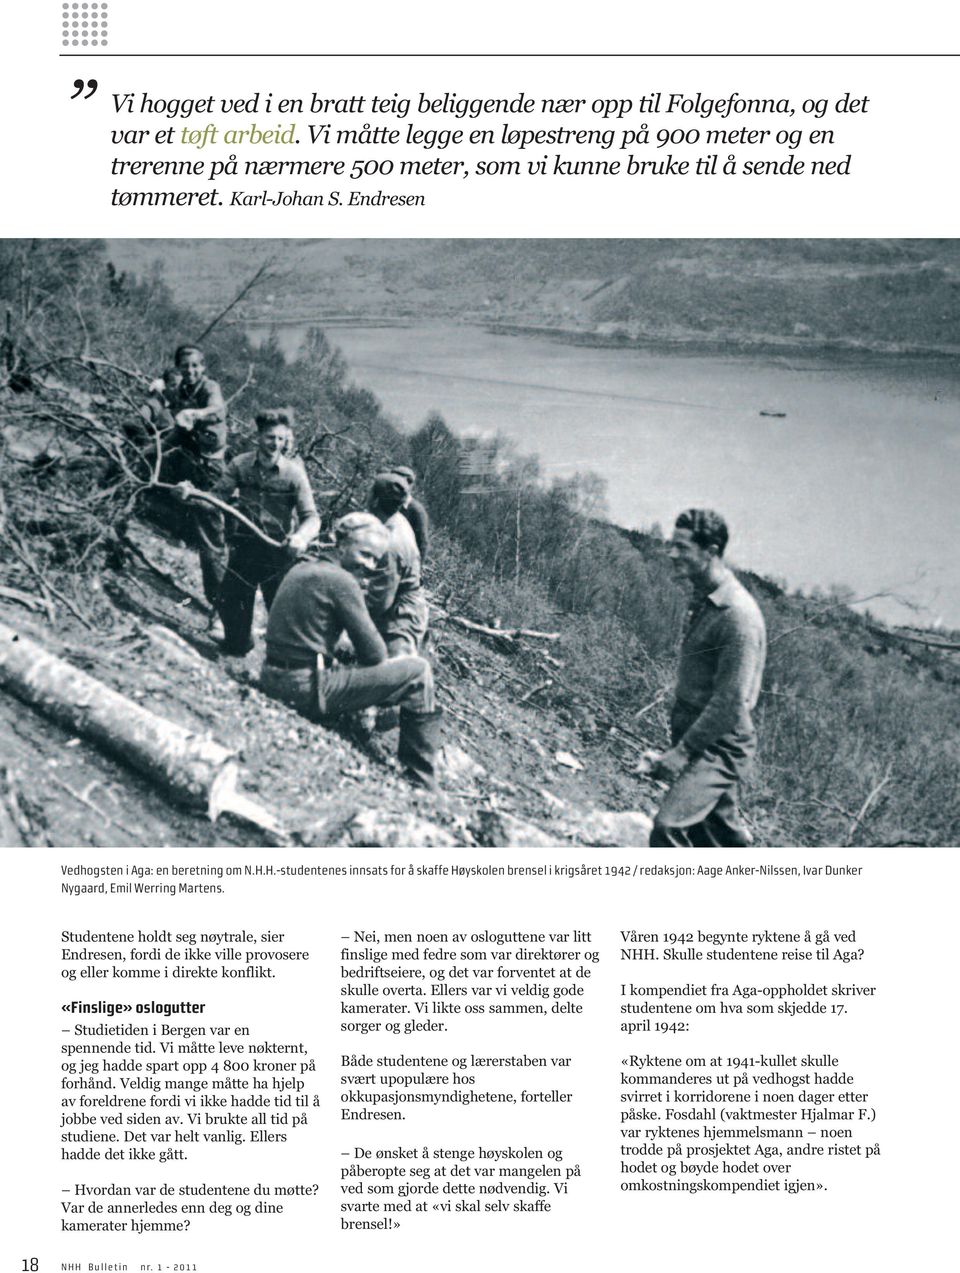 H.-studentenes innsats for å skaffe Høyskolen brensel i krigsåret 1942 / redaksjon: Aage Anker-Nilssen, Ivar Dunker Nygaard, Emil Werring Martens.